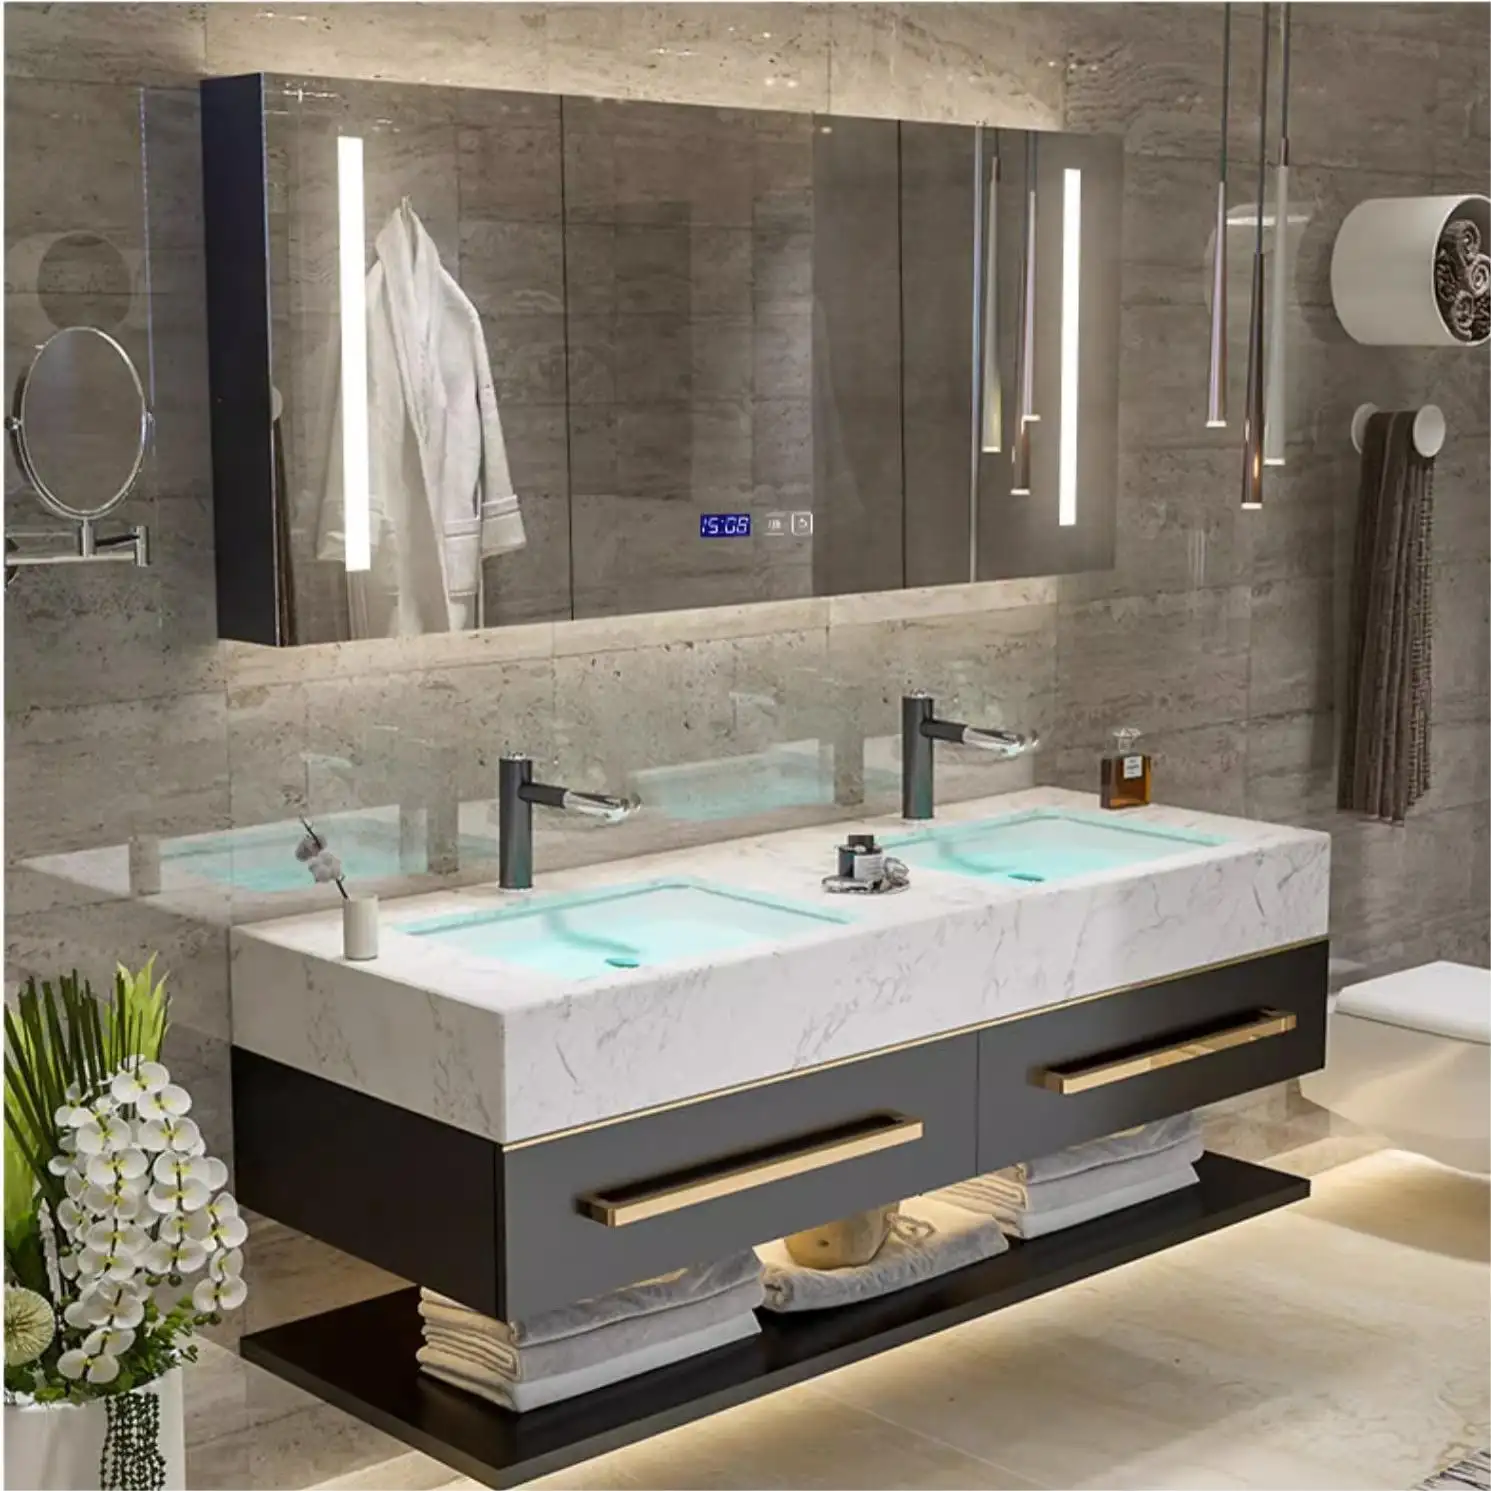 Set di vanità bagno in legno a parete moderno europeo con doppio lavabo, lavabo